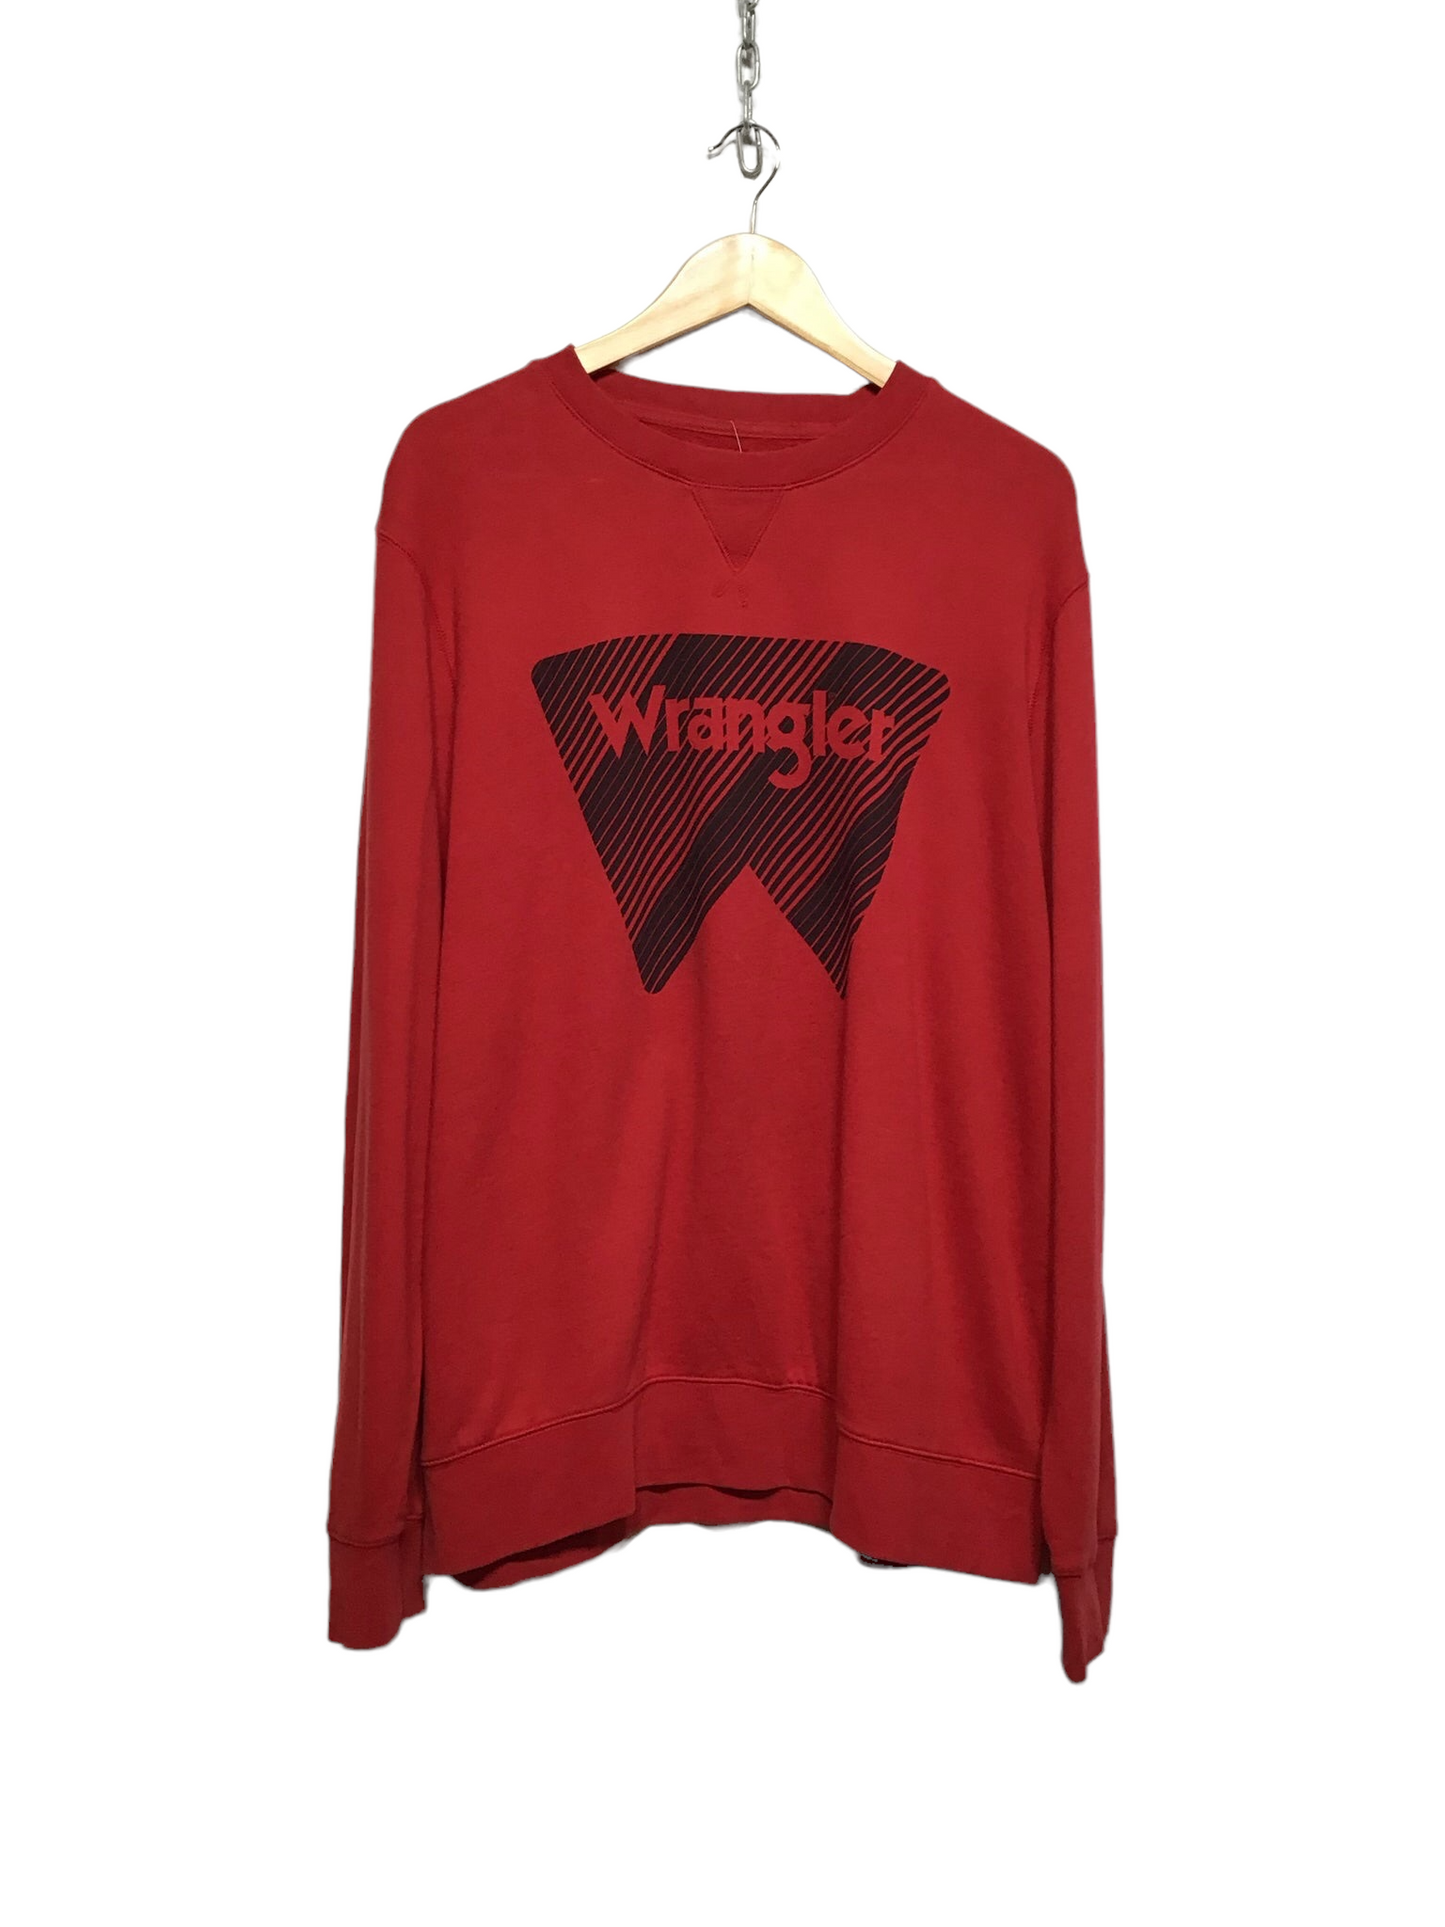 Wrangler Sweatshirt (Size XL)